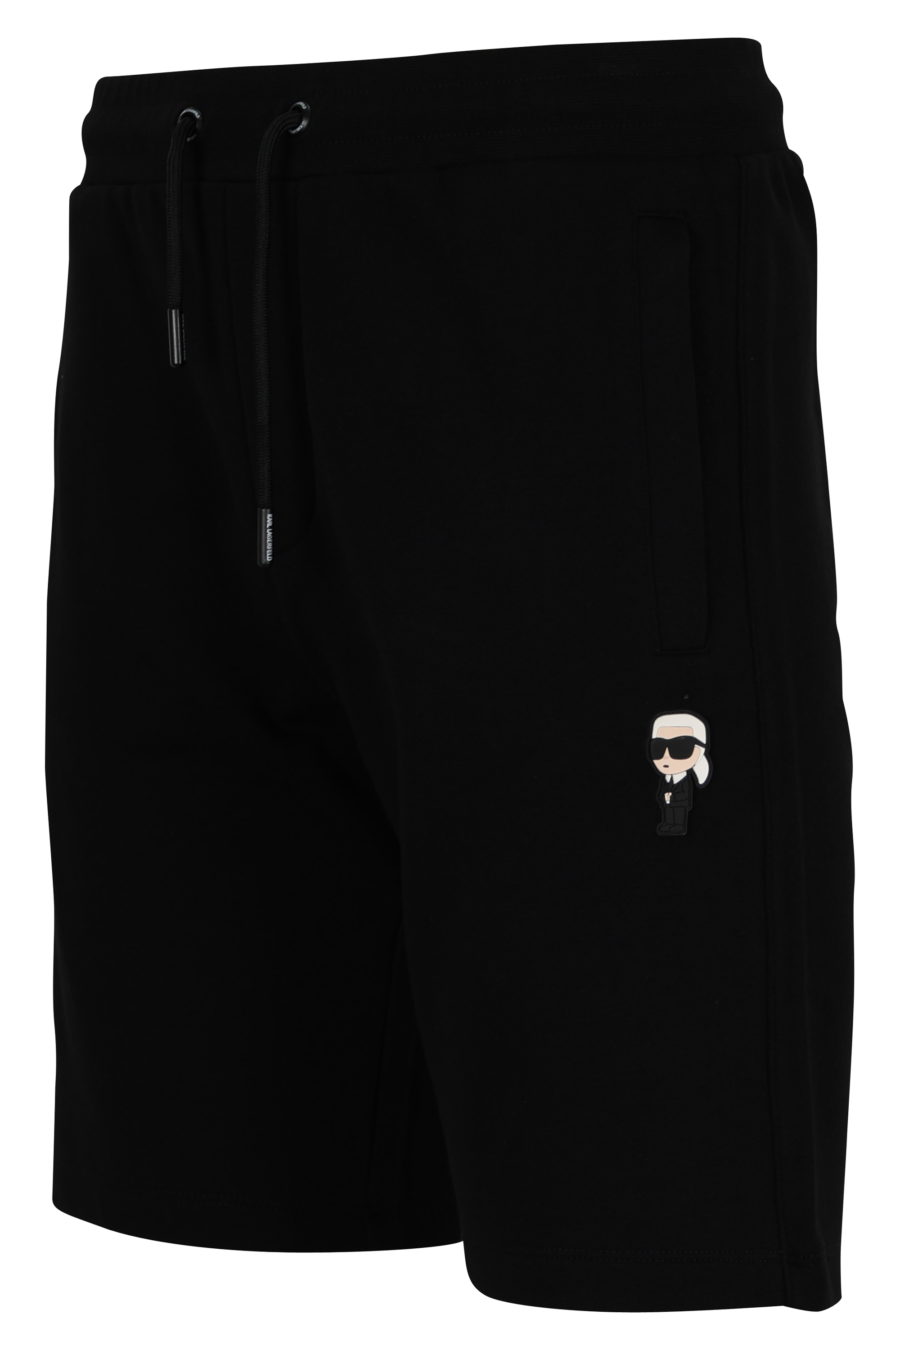 Pantalón de chándal negro midi con minilogo "karl" en goma - 4062226933087 1